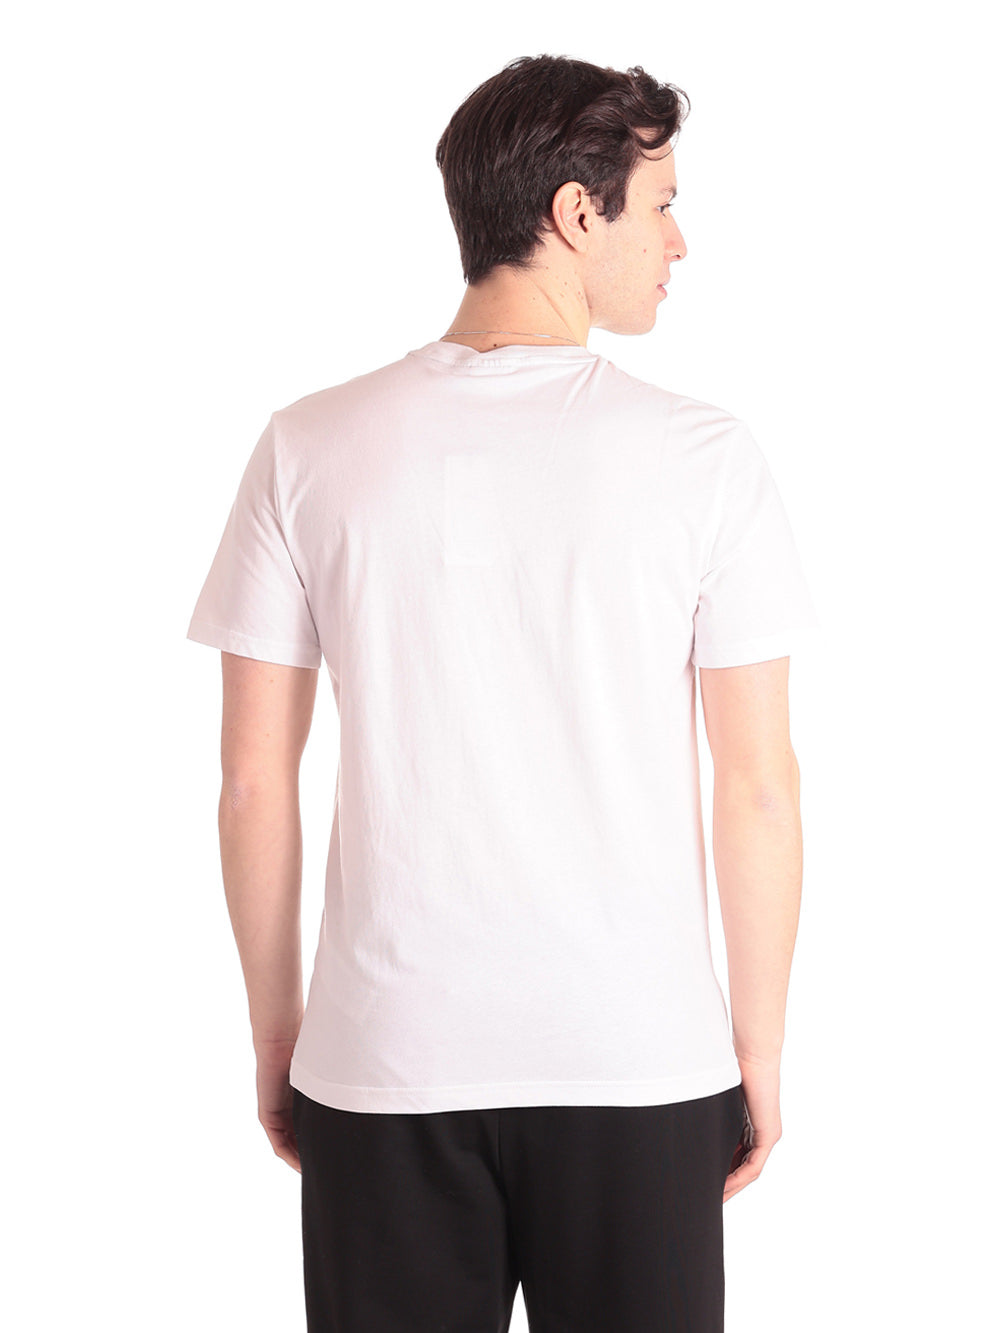 Fila T-Shirt* Fam0340 Bright White